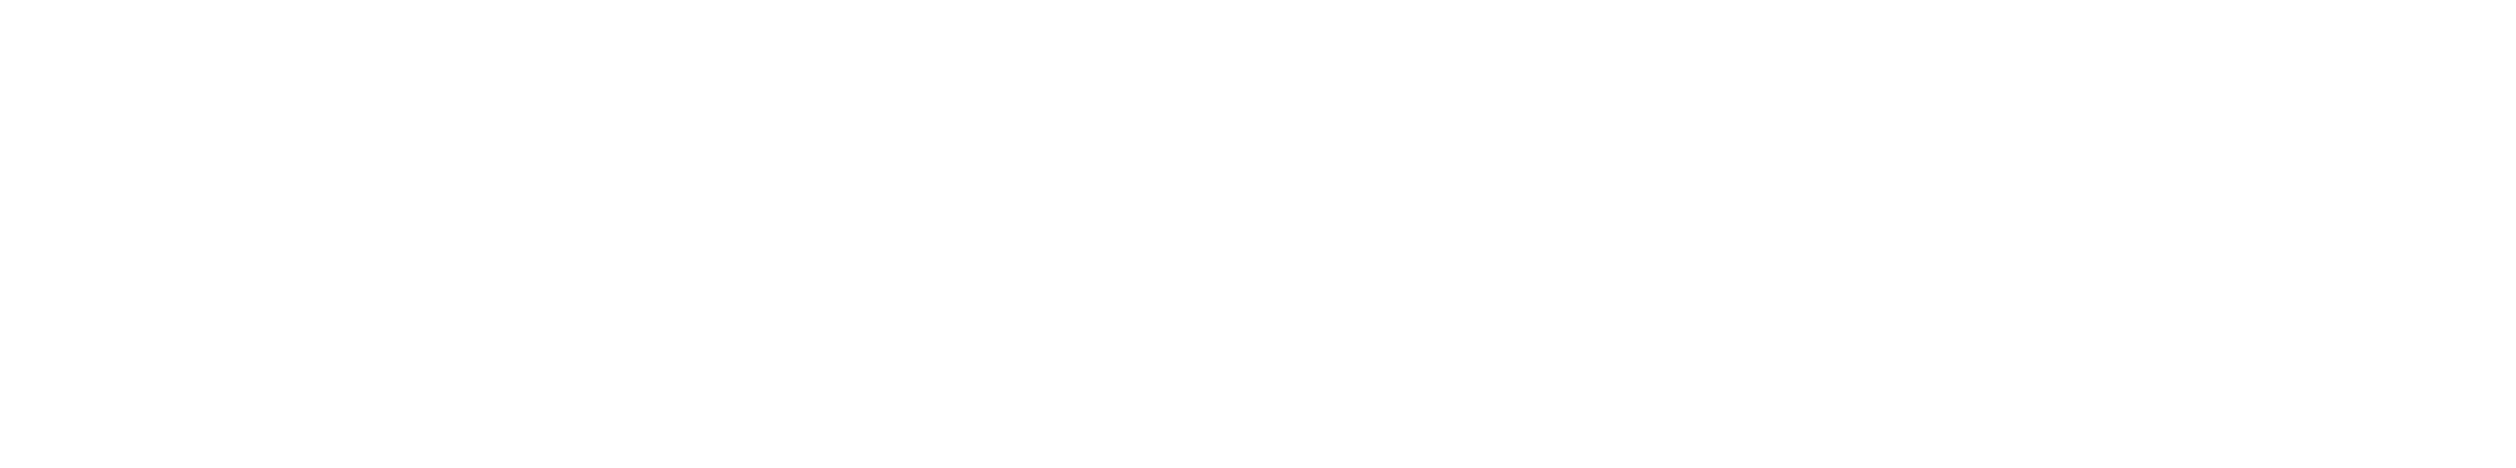 Bronco Nation News